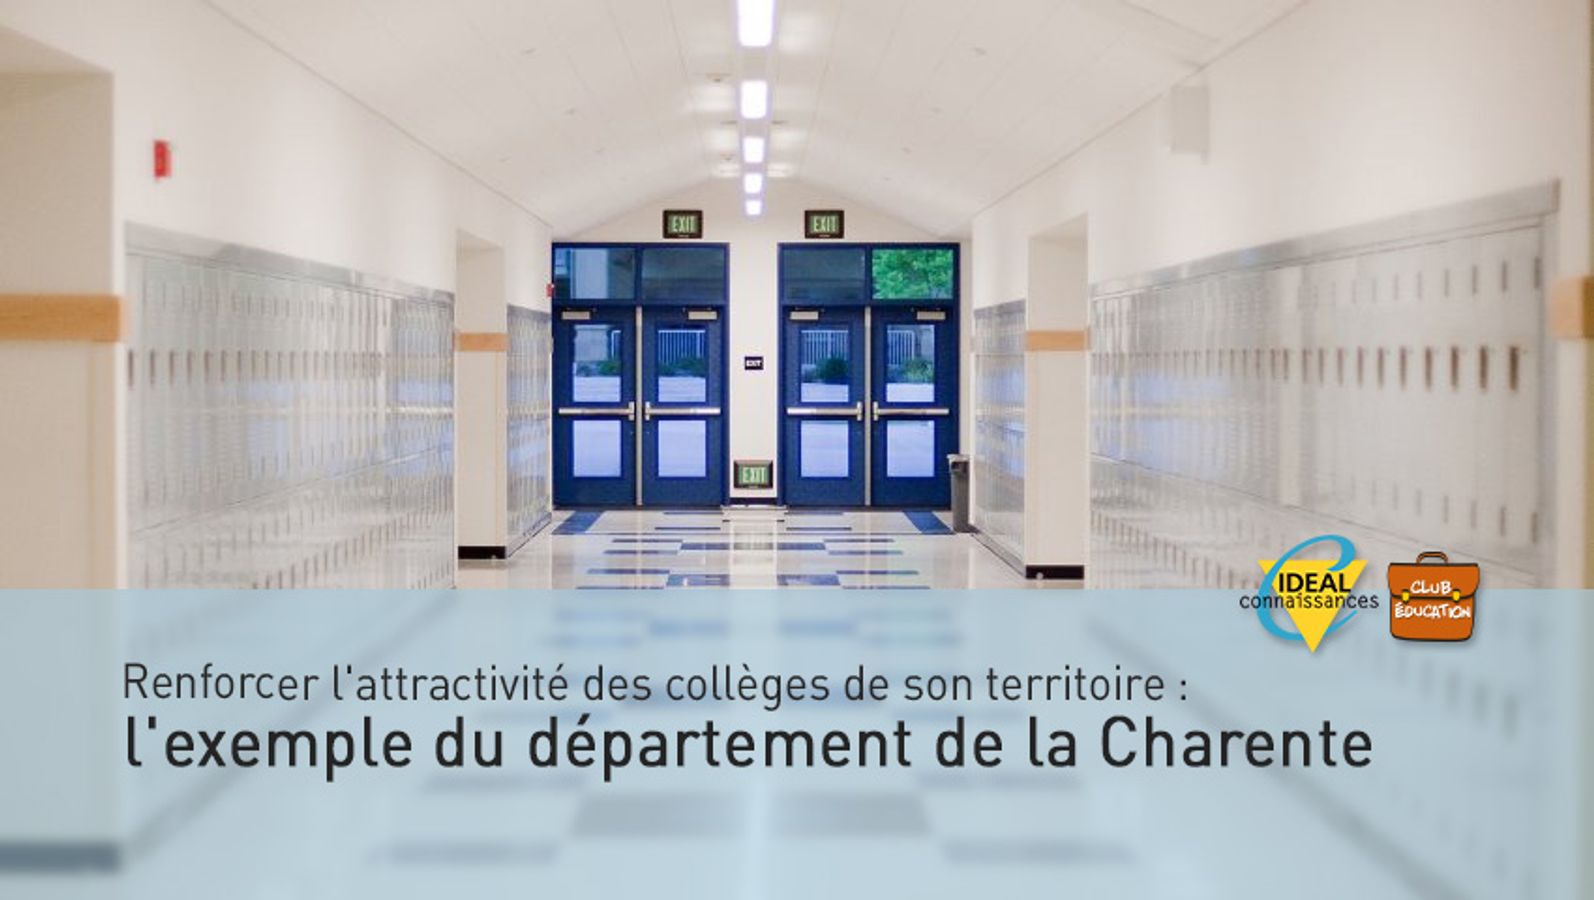 Renforcer l'attractivité des collèges de son territoire: l'exemple du département de la Charente